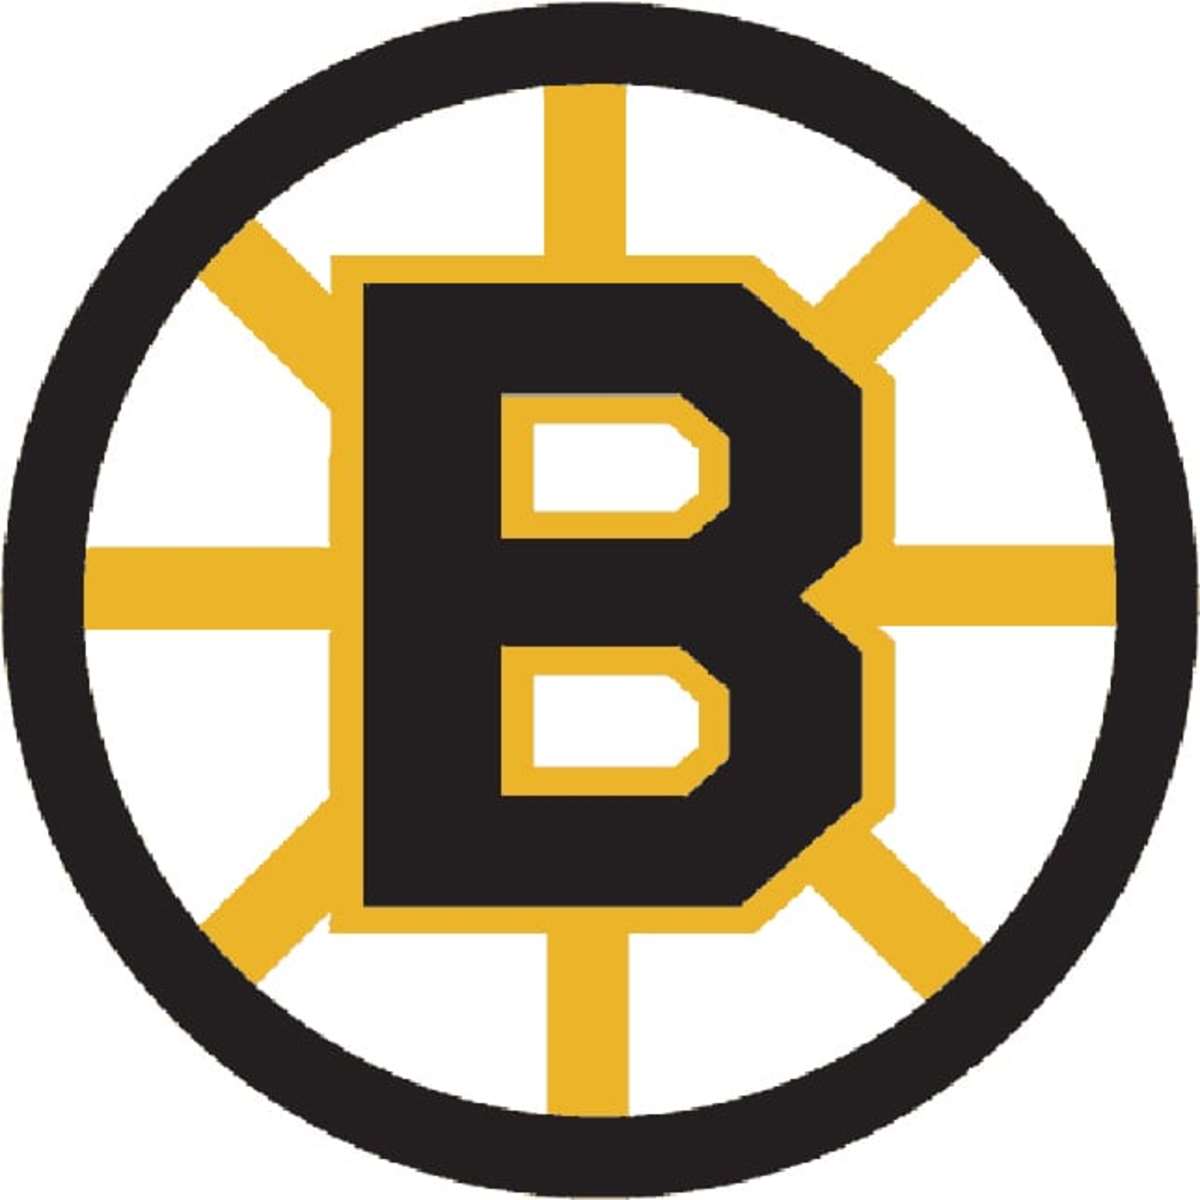 NHL logo rankings No. 7 Boston Bruins TheHockeyNews